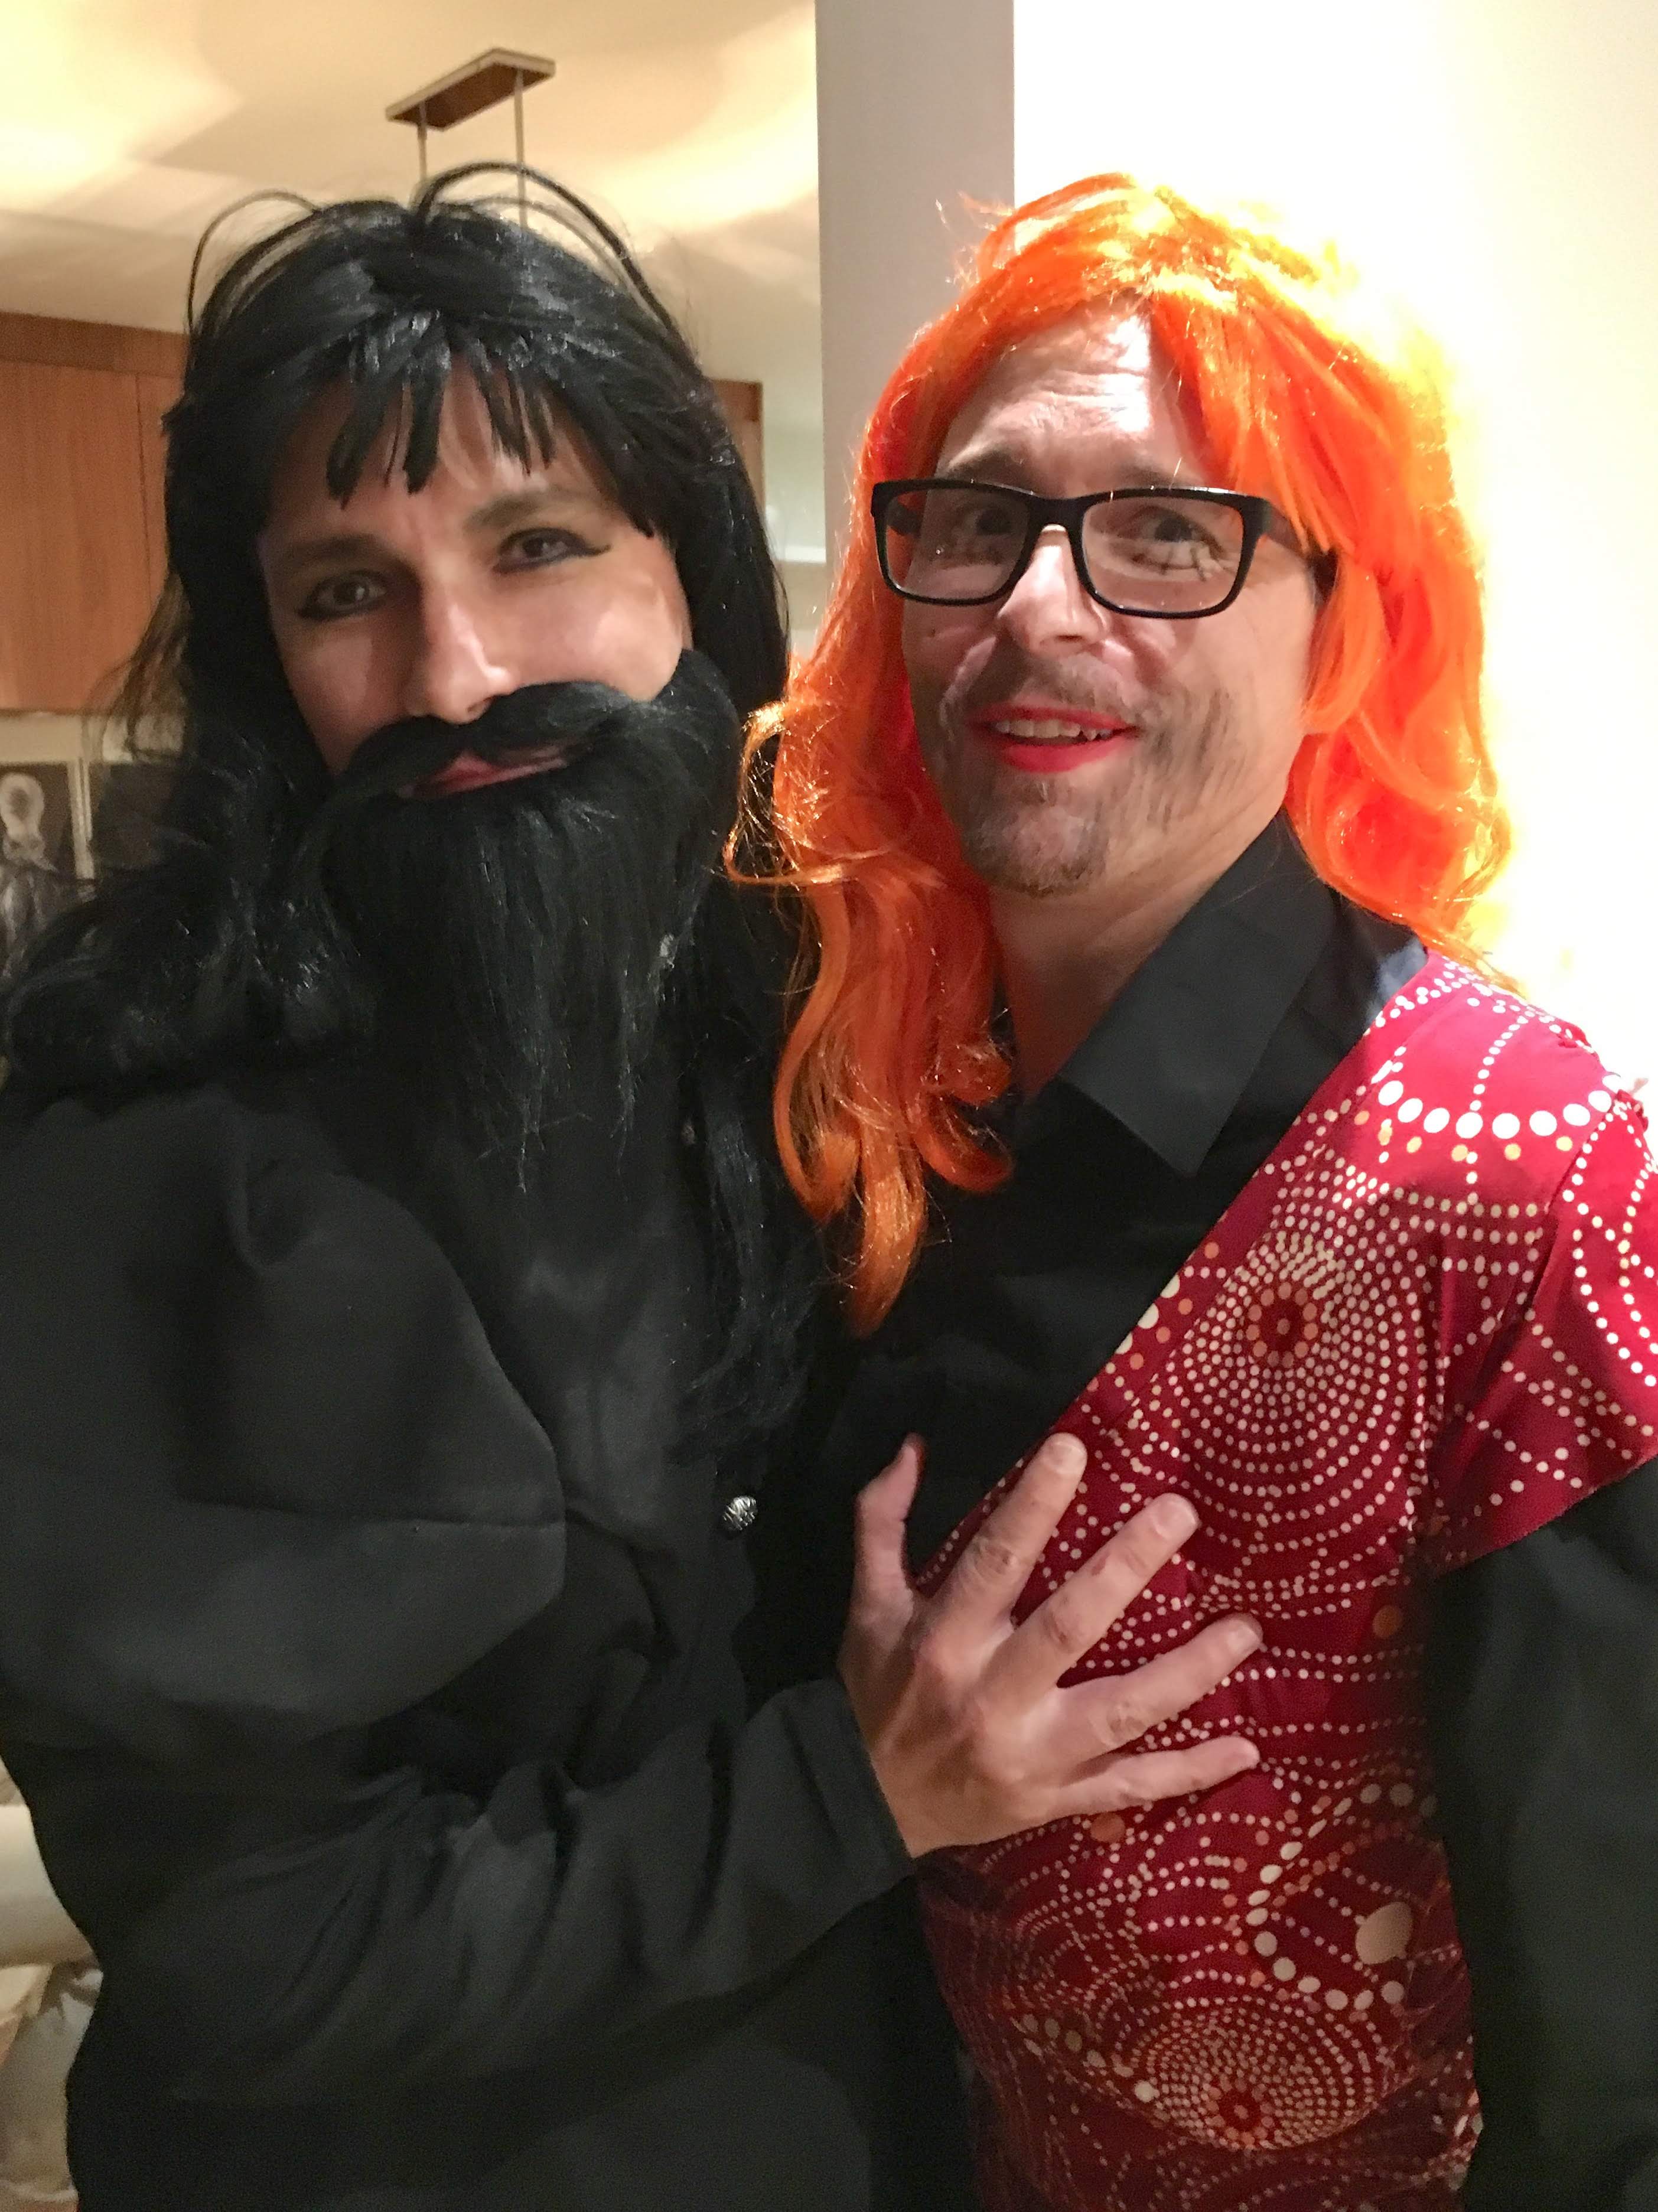 Two men dressed as bearded ladies